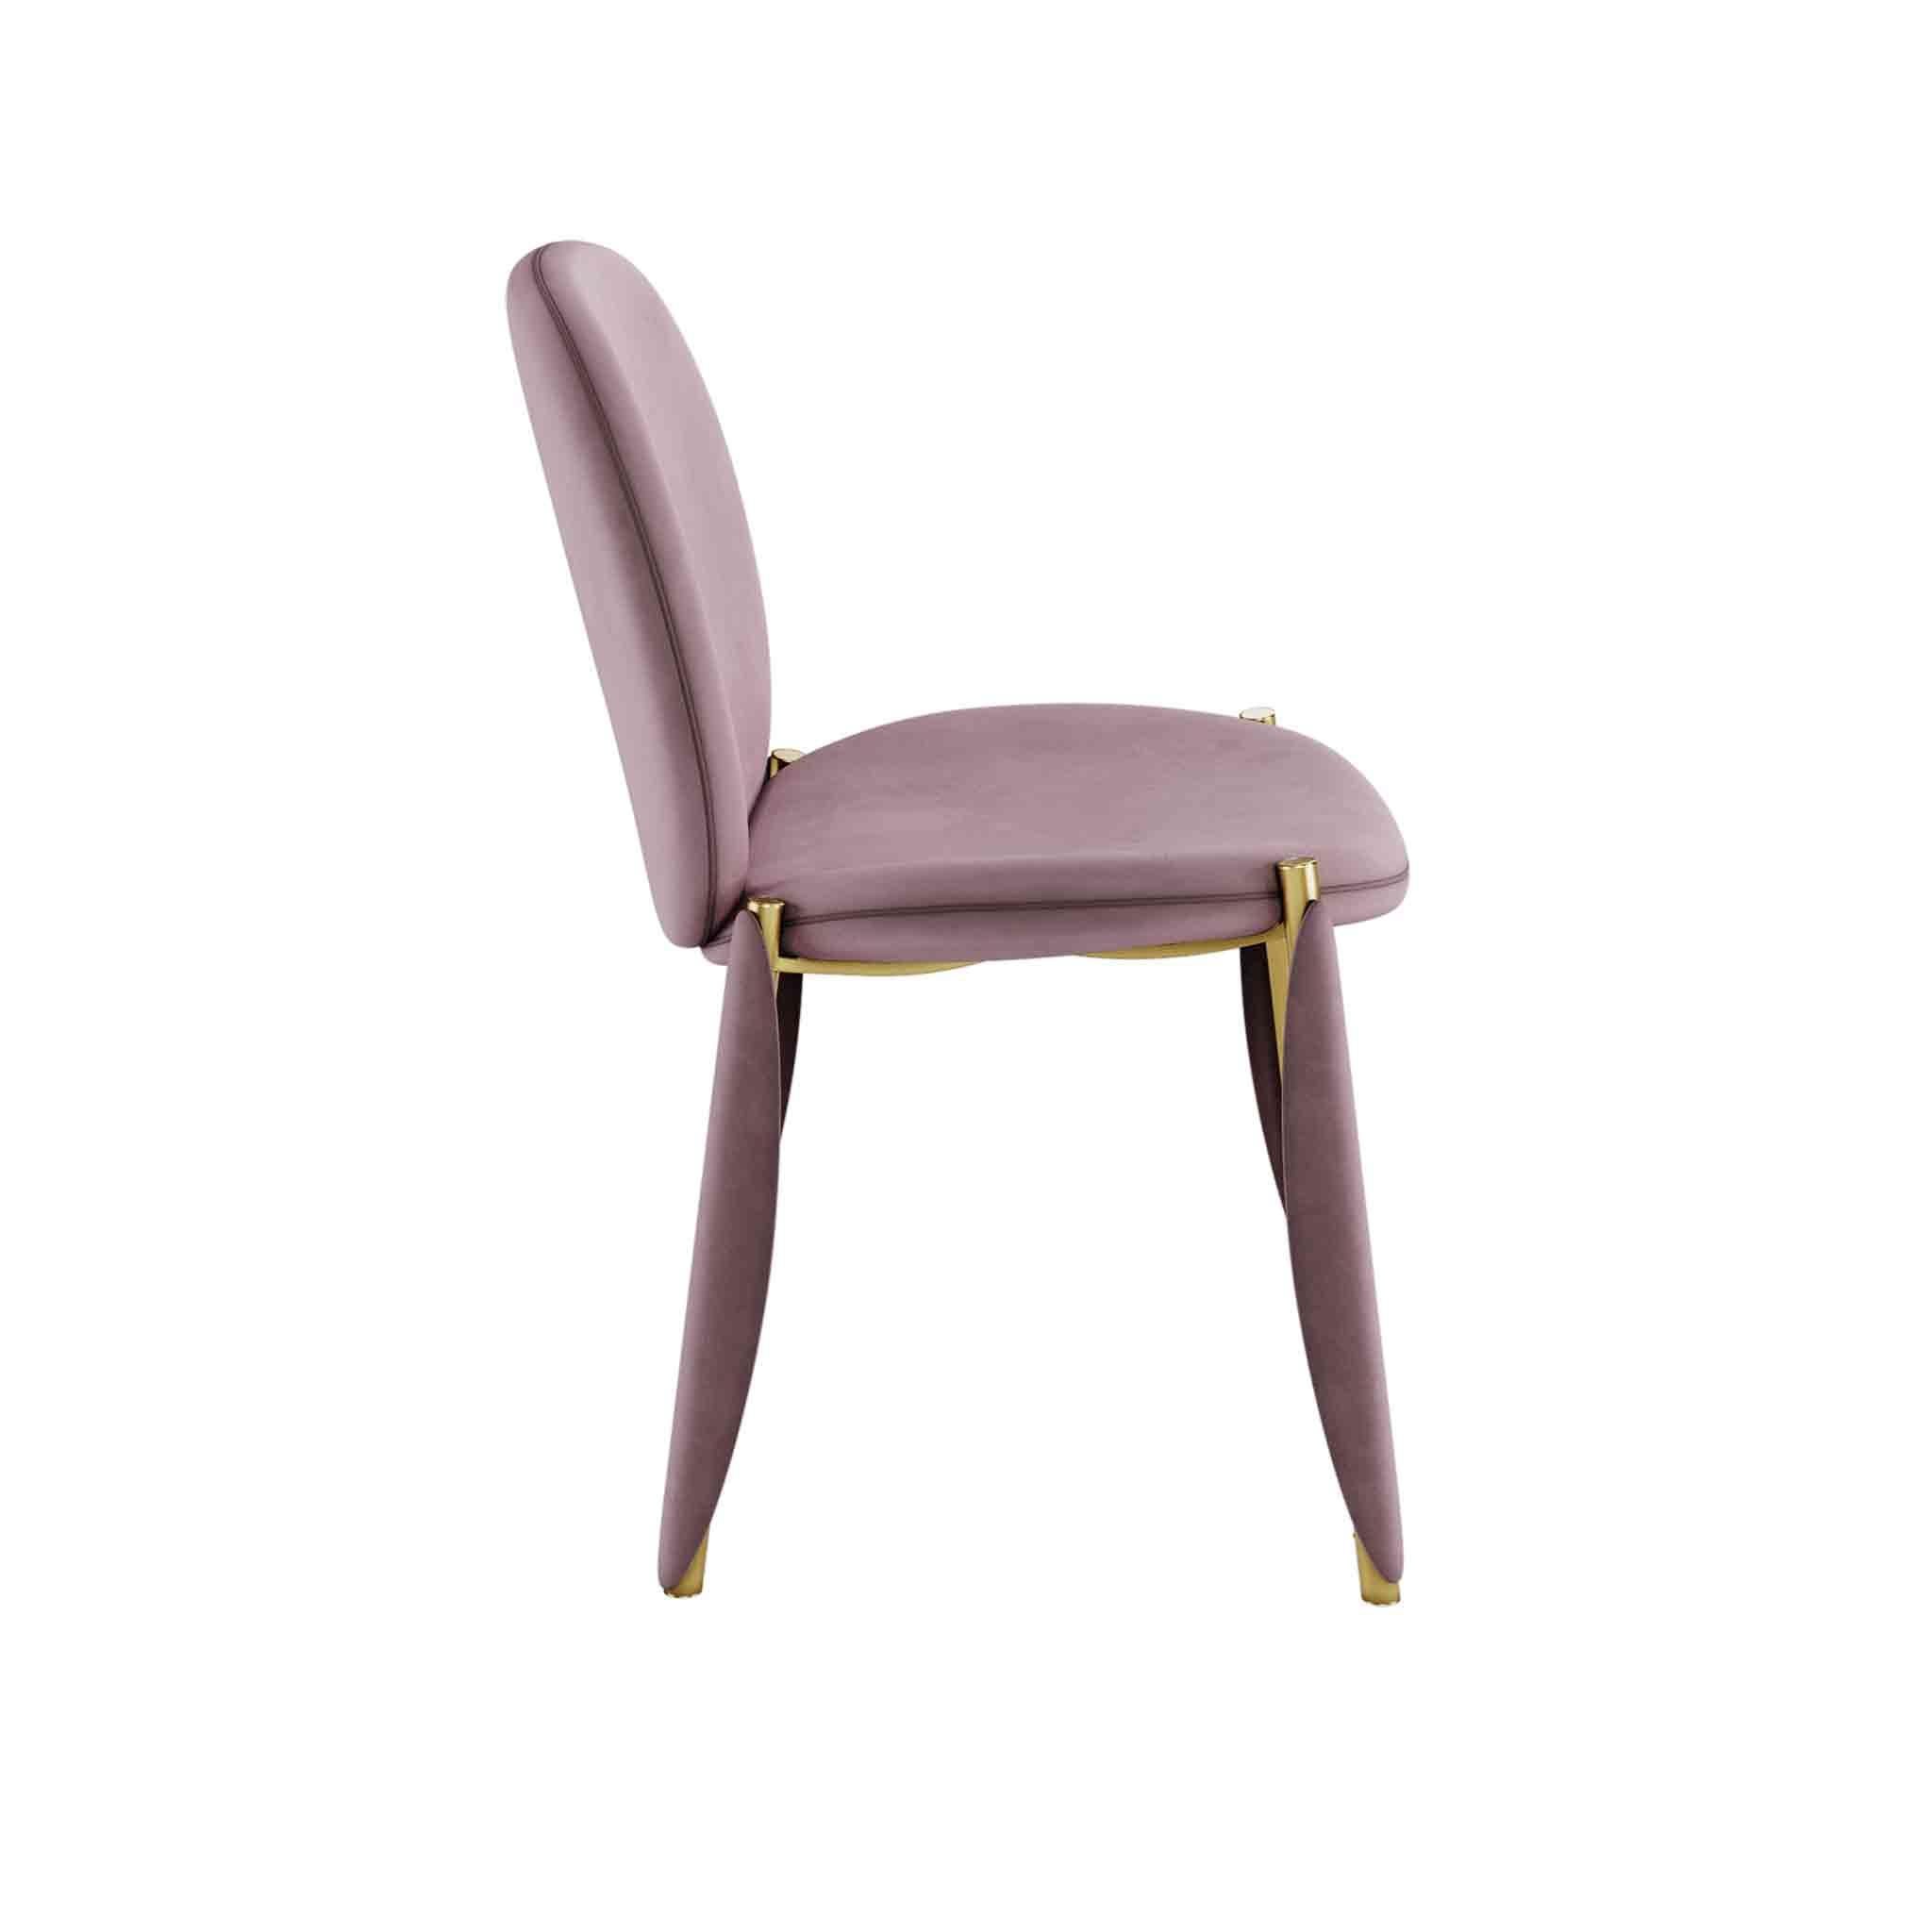 Der Stuhl Mantis ist ein luxuriöser Esszimmerstuhl, der durch die Kombination einzigartiger MATERIALIEN zum Ausdruck kommt. Ein moderner Esszimmerstuhl ist die perfekte Wahl für ein modernes oder klassisches Esszimmerdesign.

MATERIALIEN: Mit Samt